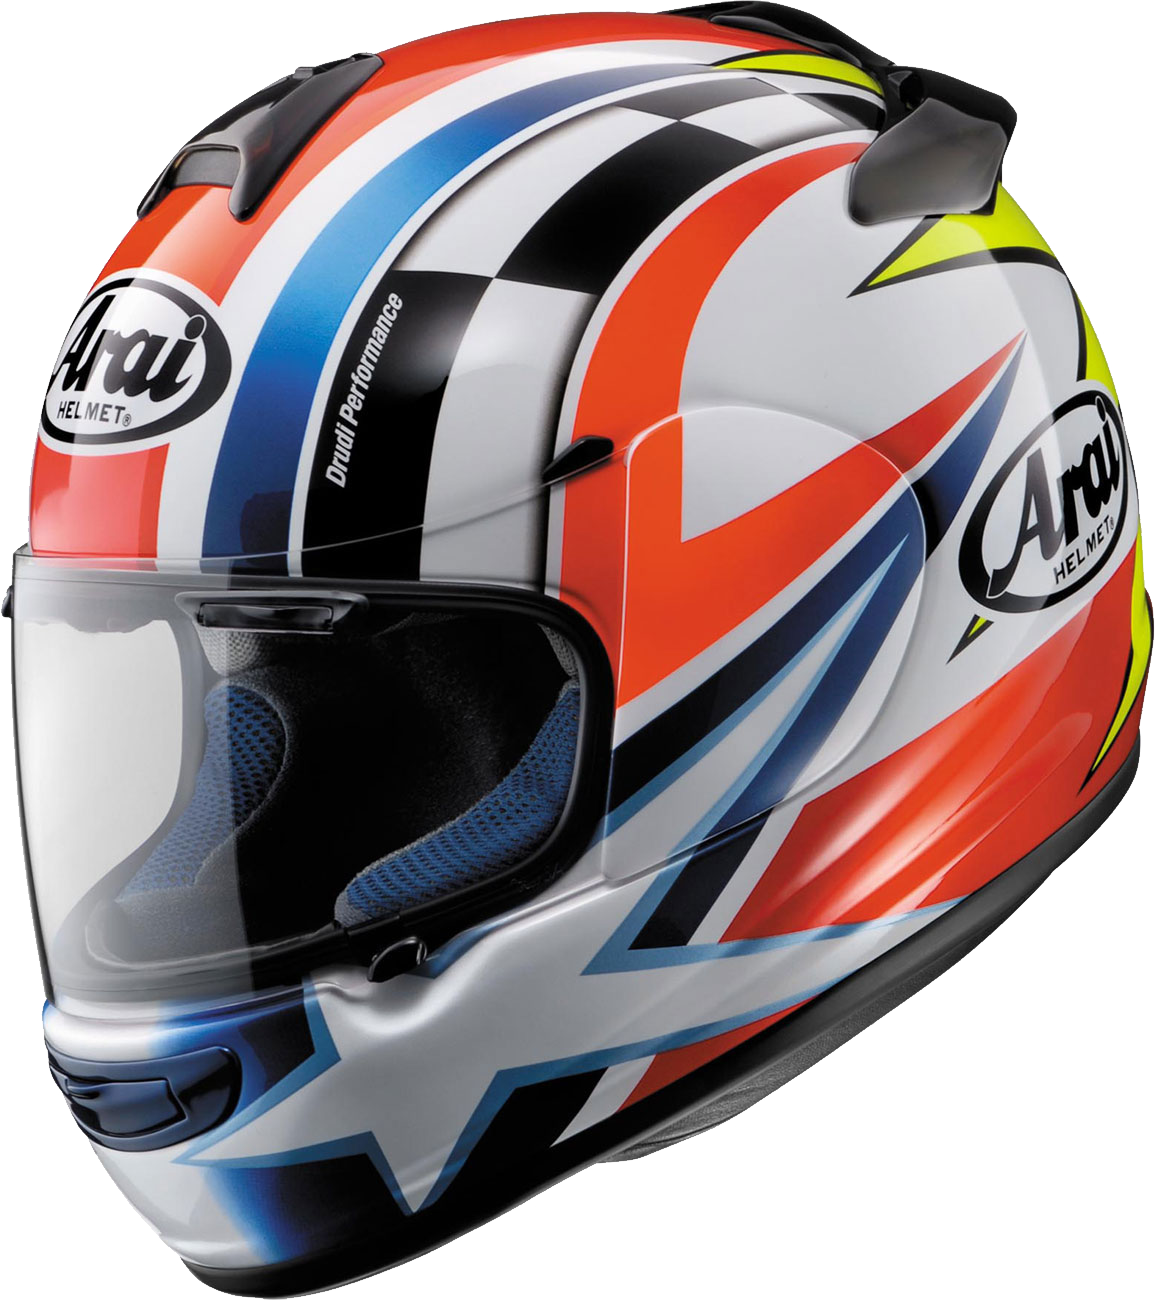 Imagen PNG del casco de la motocicleta con fondo Transparente